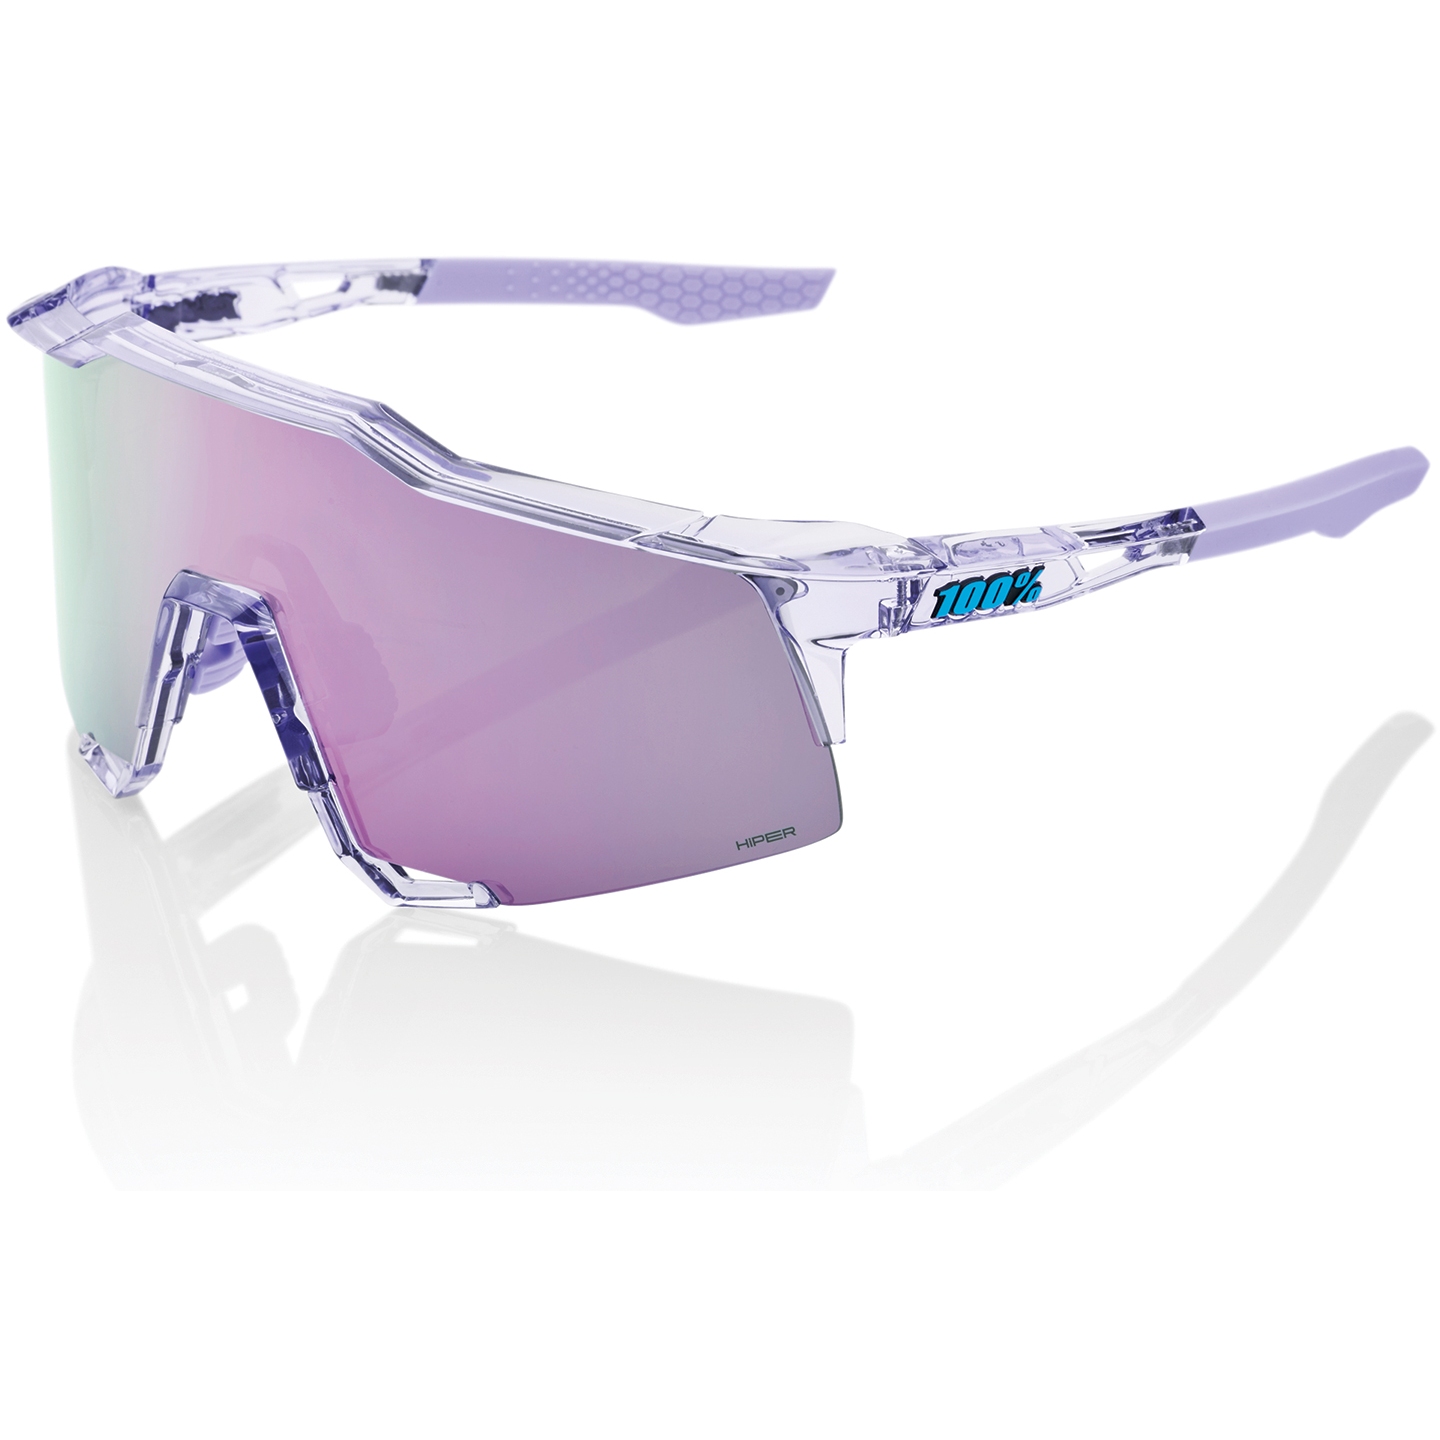 Produktbild von 100% Speedcraft Brille - HiPER Mirror Lens - Polished Translucent Lavender / Lavender + Clear